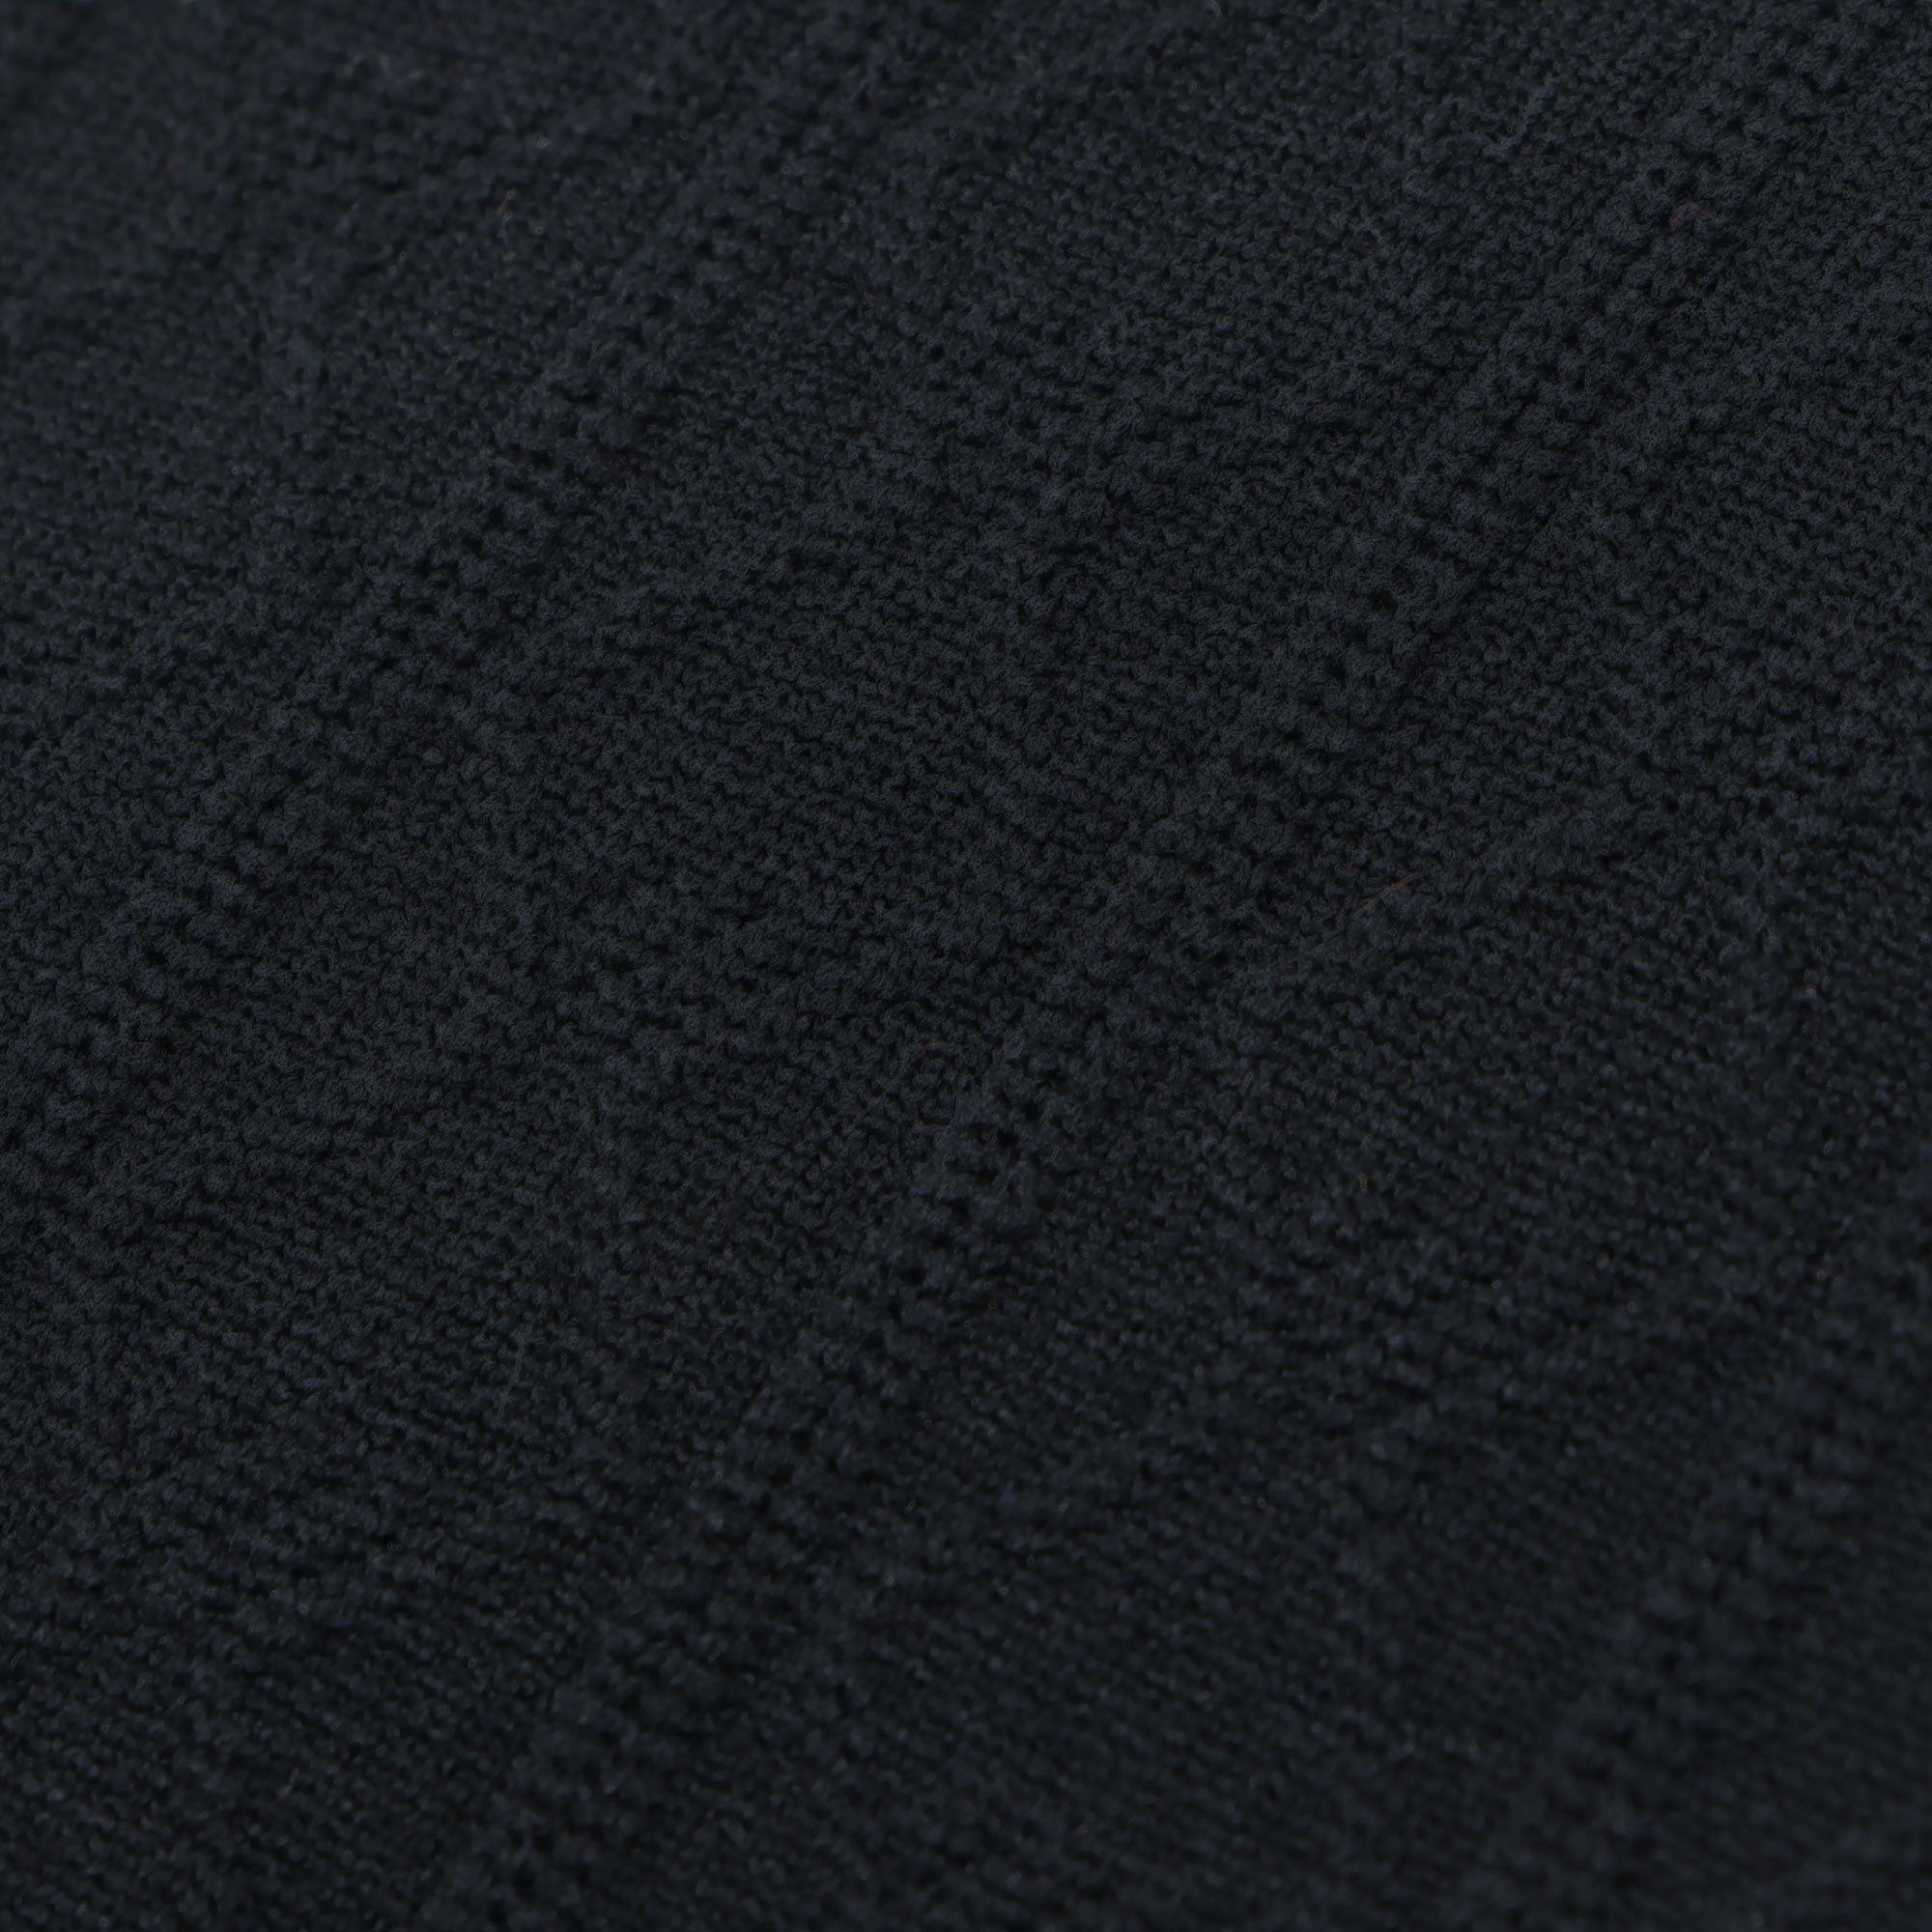 Термолеггинсы женские Oemen KZ001 черные S, цвет черный, размер S - фото 2